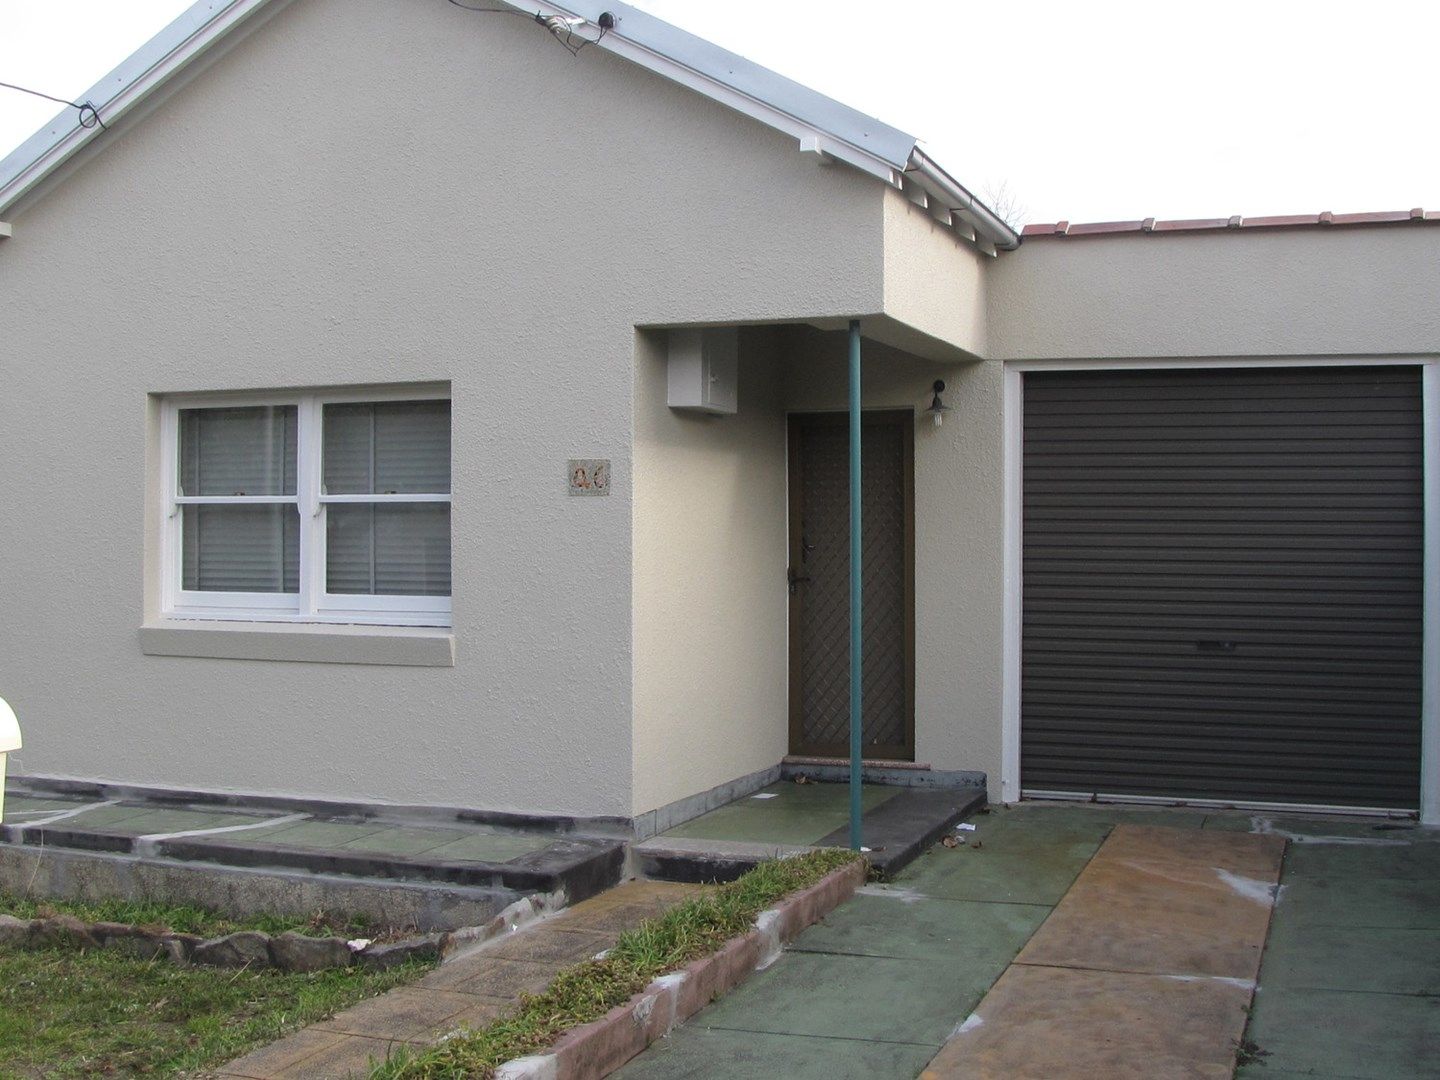 2 bedrooms House in 46 Benaroon Road BELMORE NSW, 2192